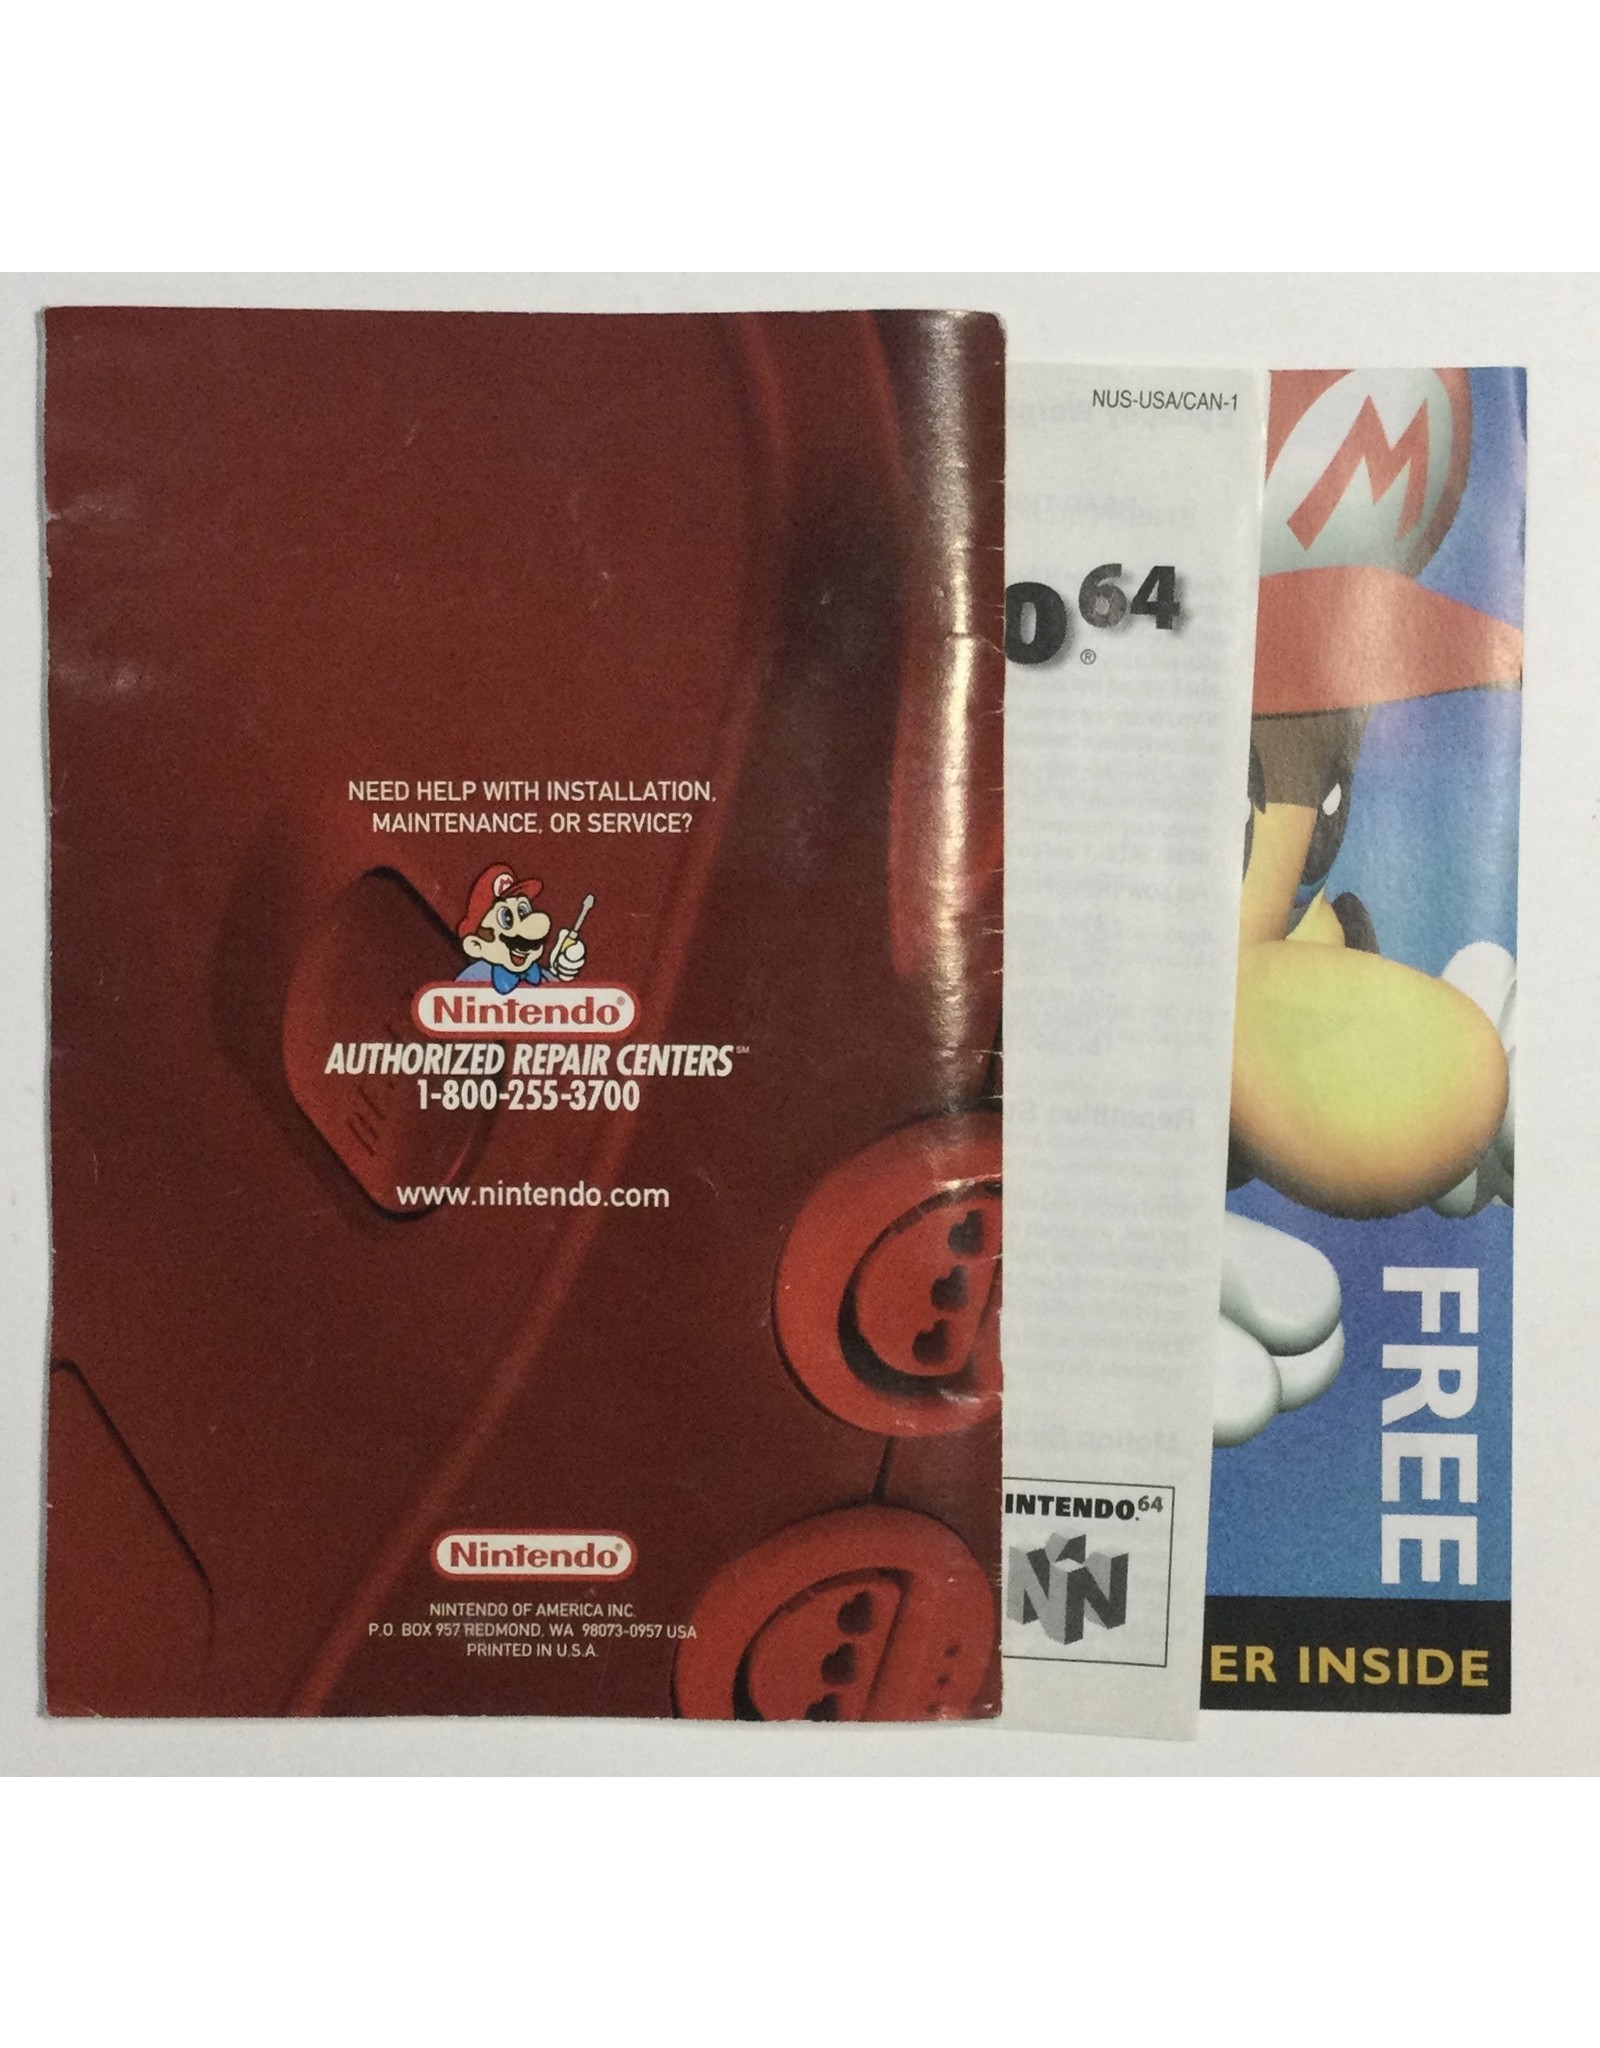 Nintendo Mario Party for Nintendo 64 (N64) - CIB